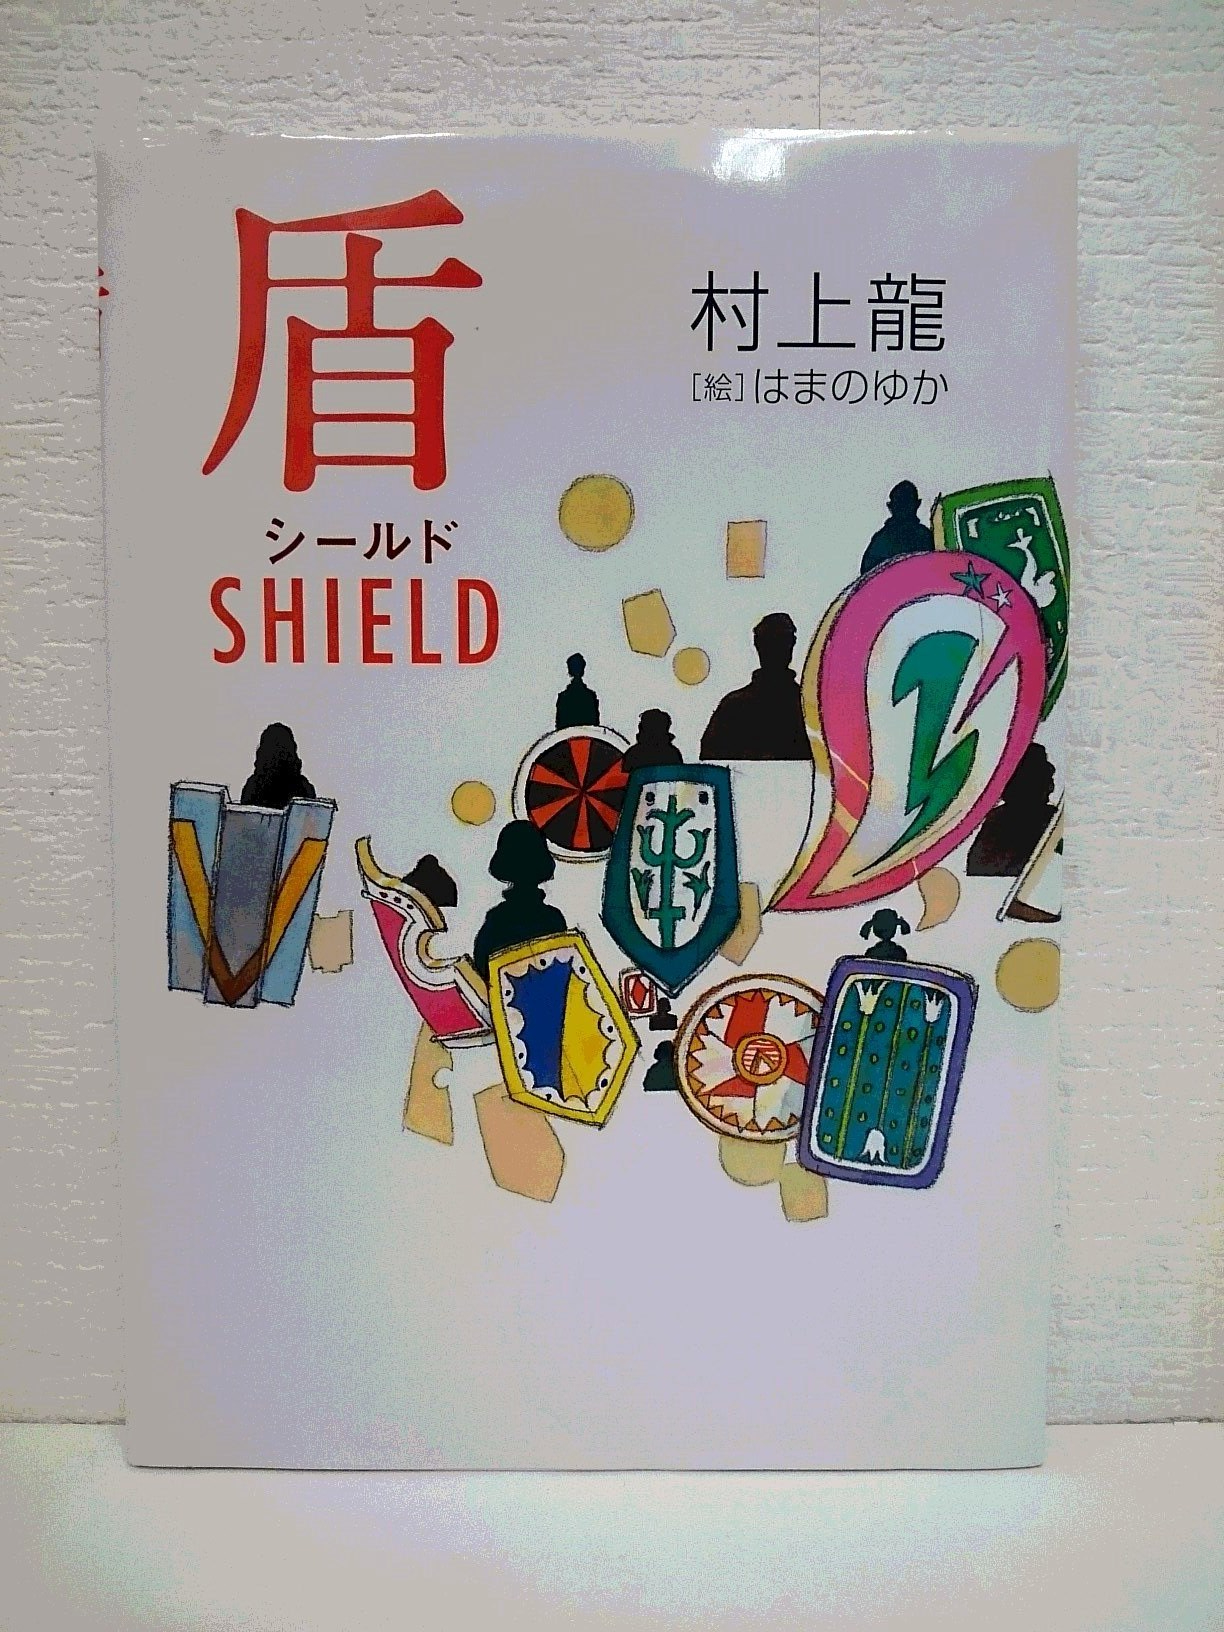 盾・shield